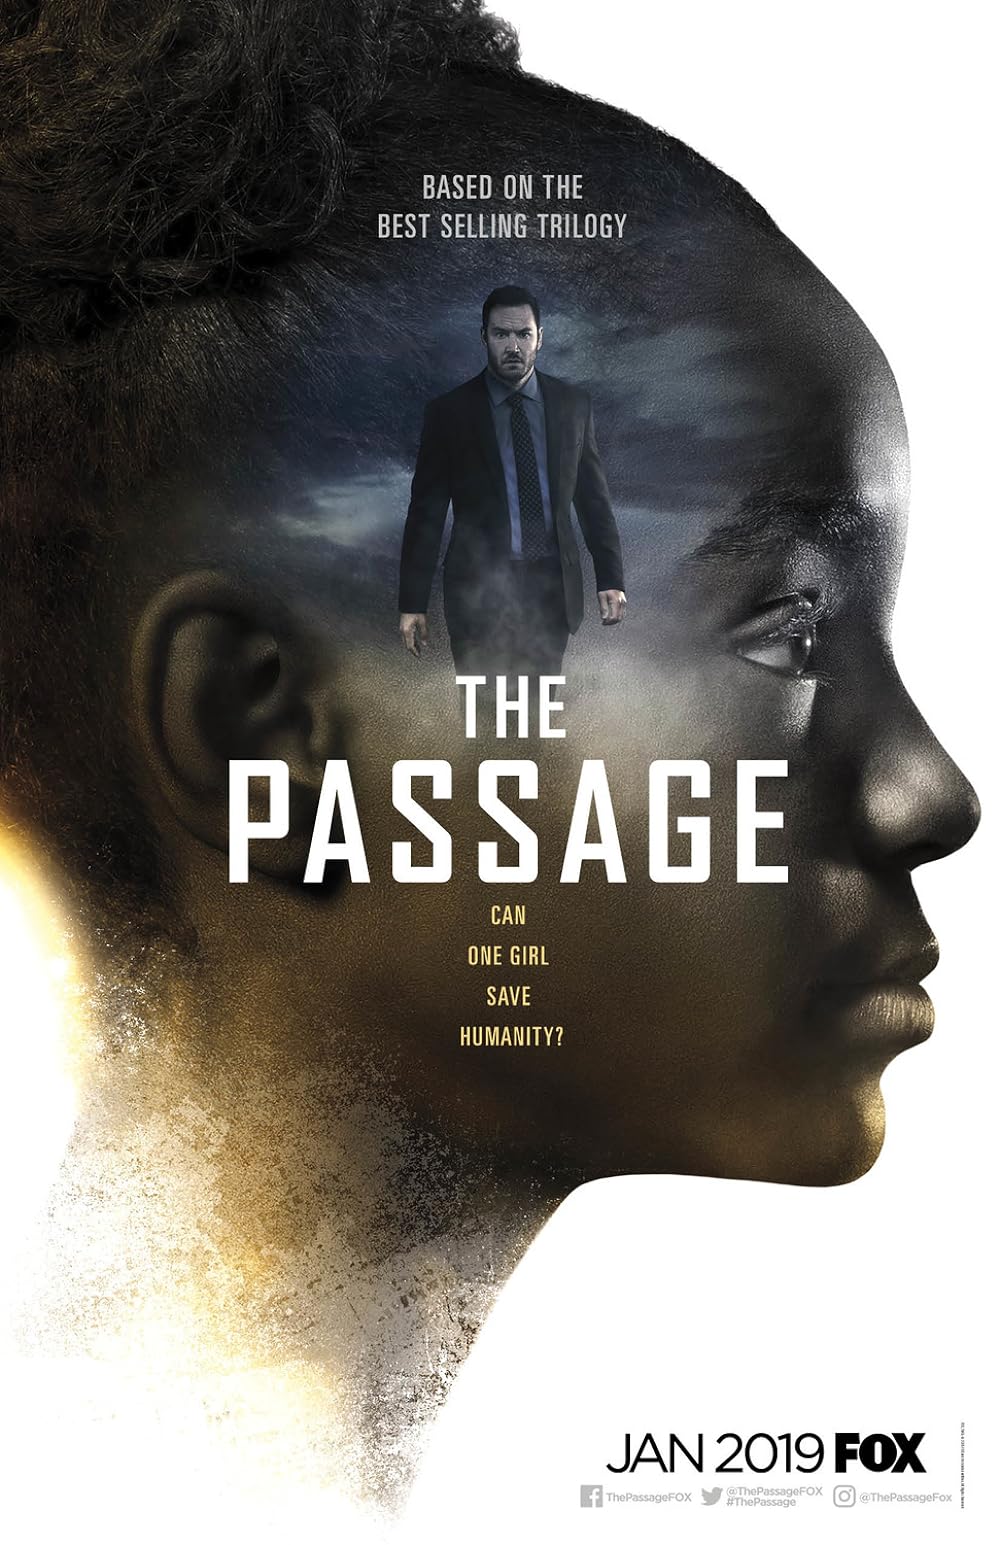 The Passage (2019) S1 EP01&EP10 128Kbps 23.976Fps 48Khz 2.0Ch Disney+ DD+ E-AC3 Turkish Audio TAC